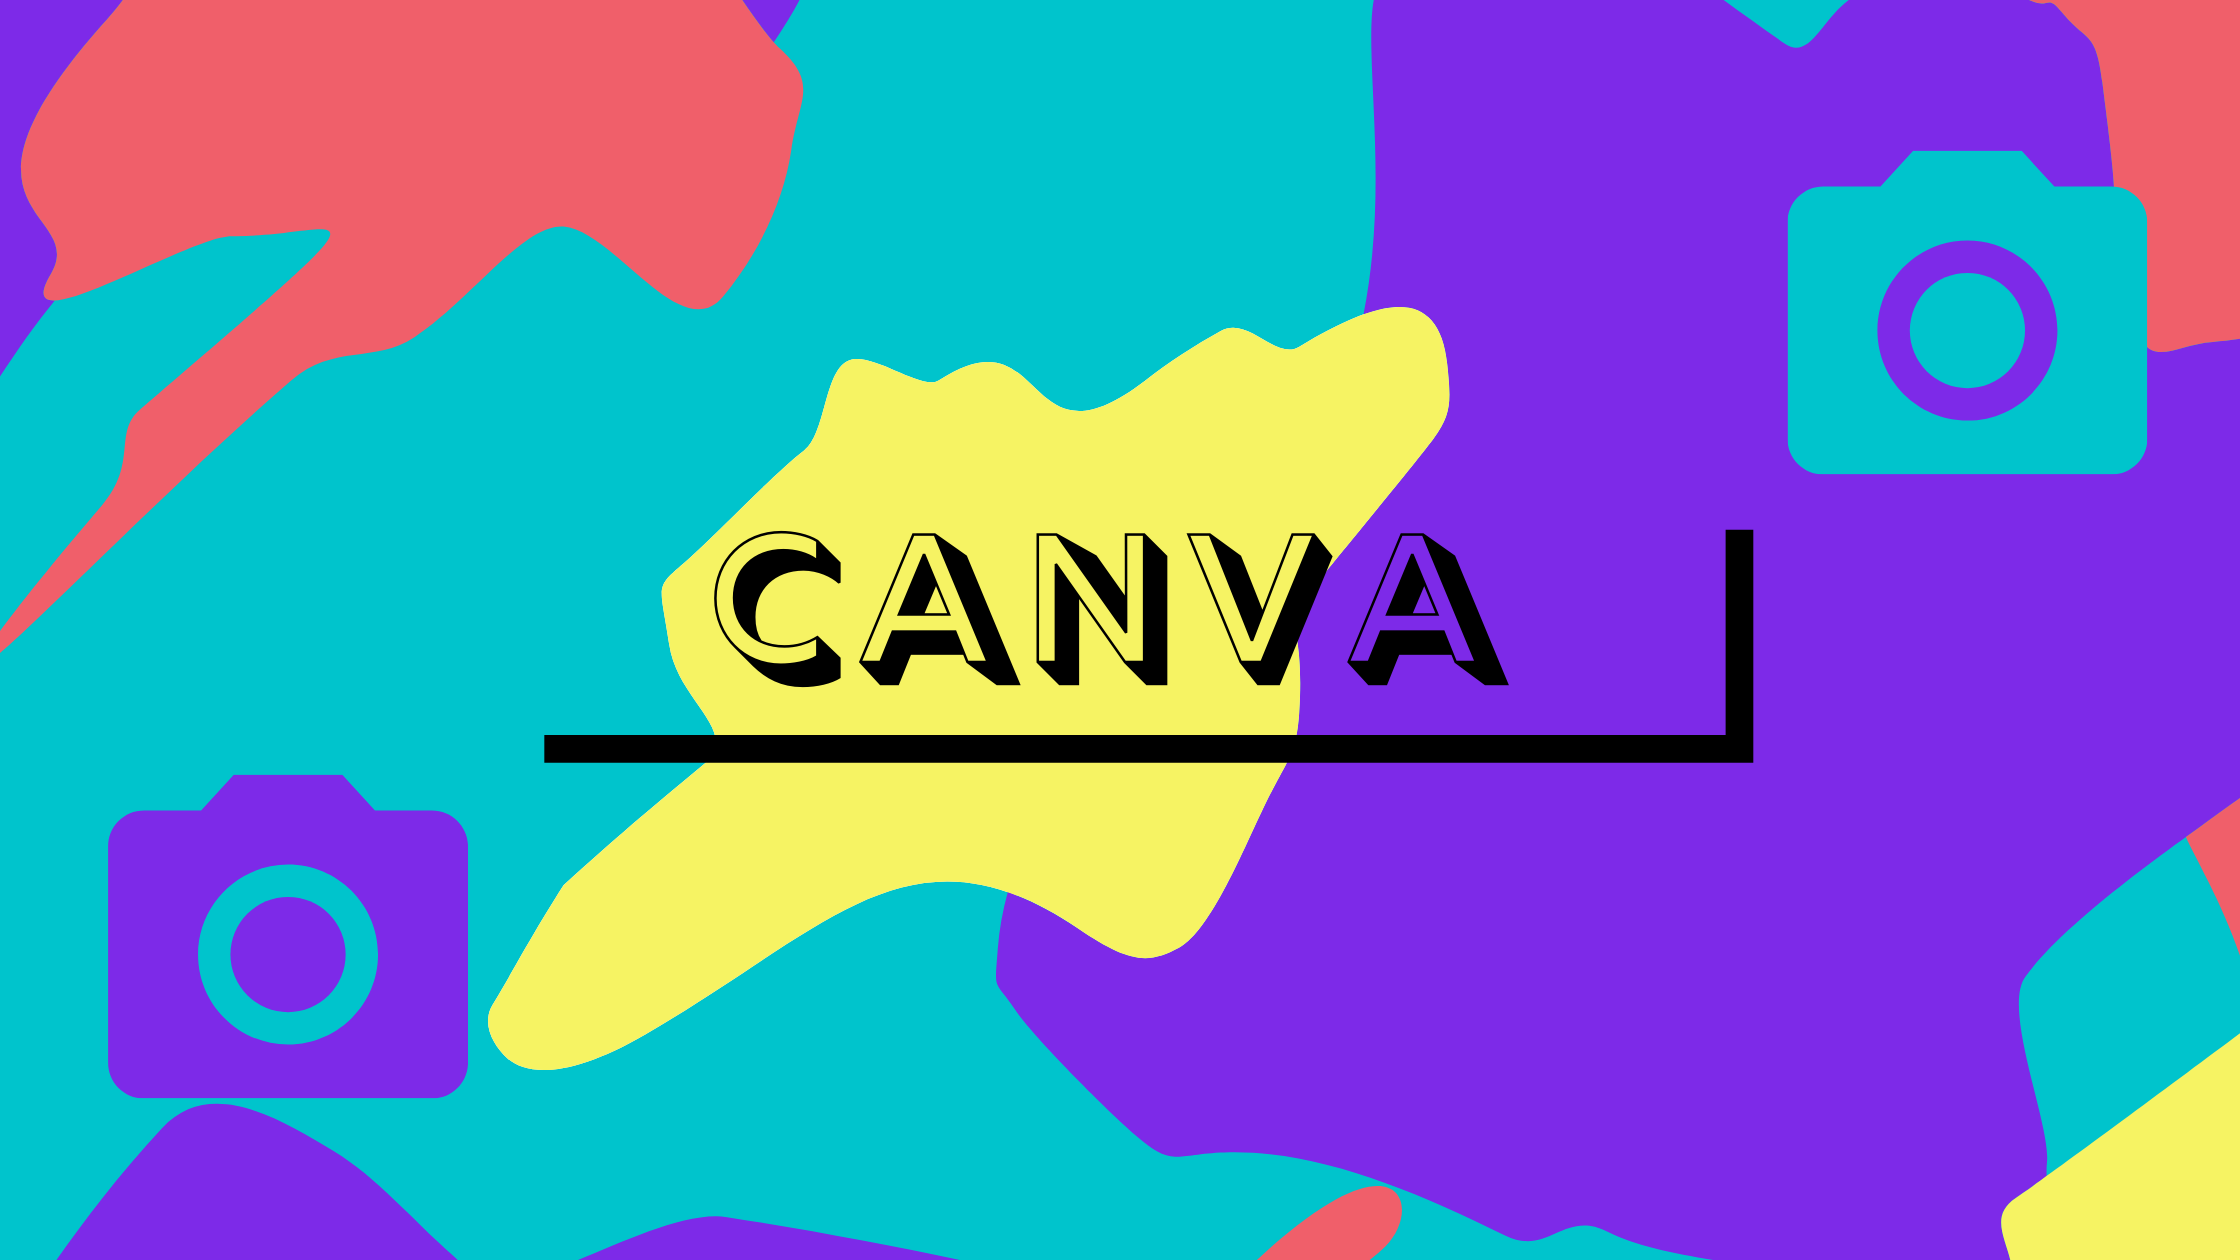 オシャレなデザインを簡単に作れるツール Canva